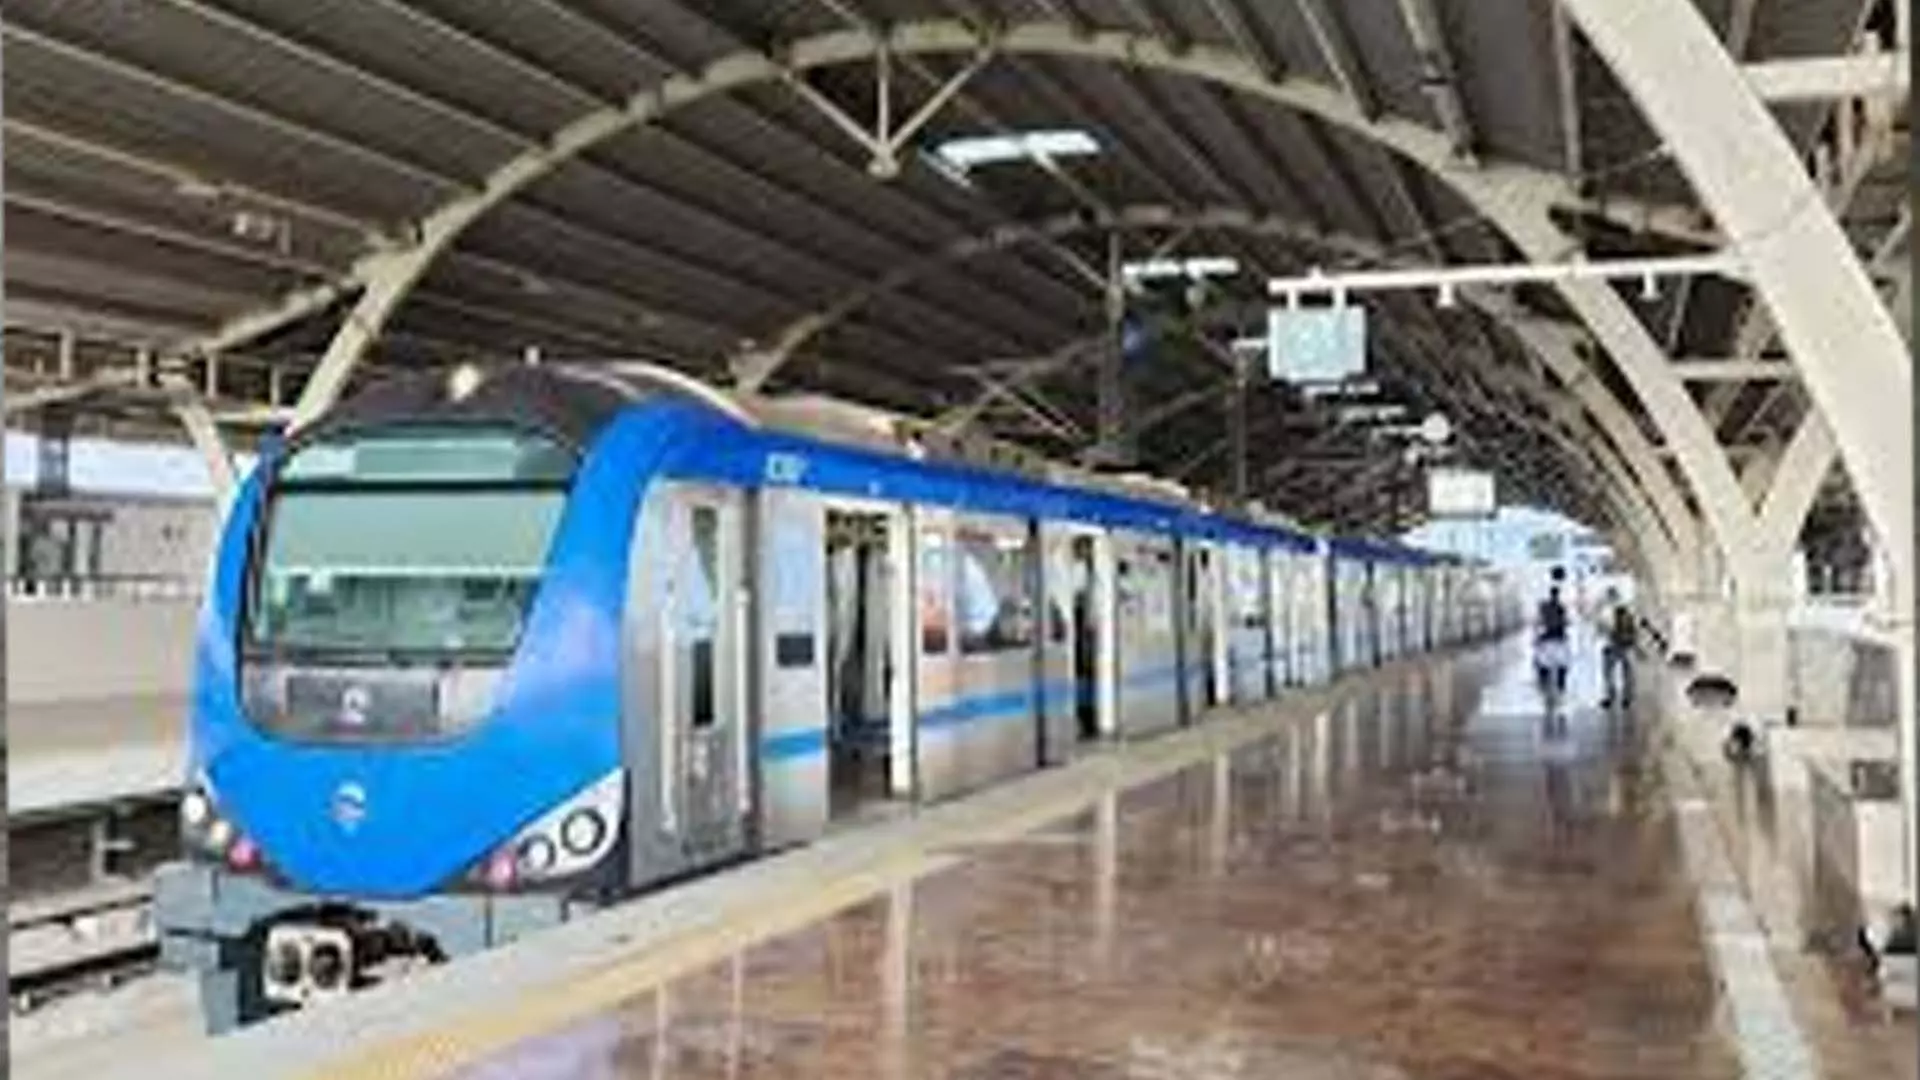 Chennai News: तकनीकी खराबी के कारण चेन्नई मेट्रो रेल सेवा रुकी